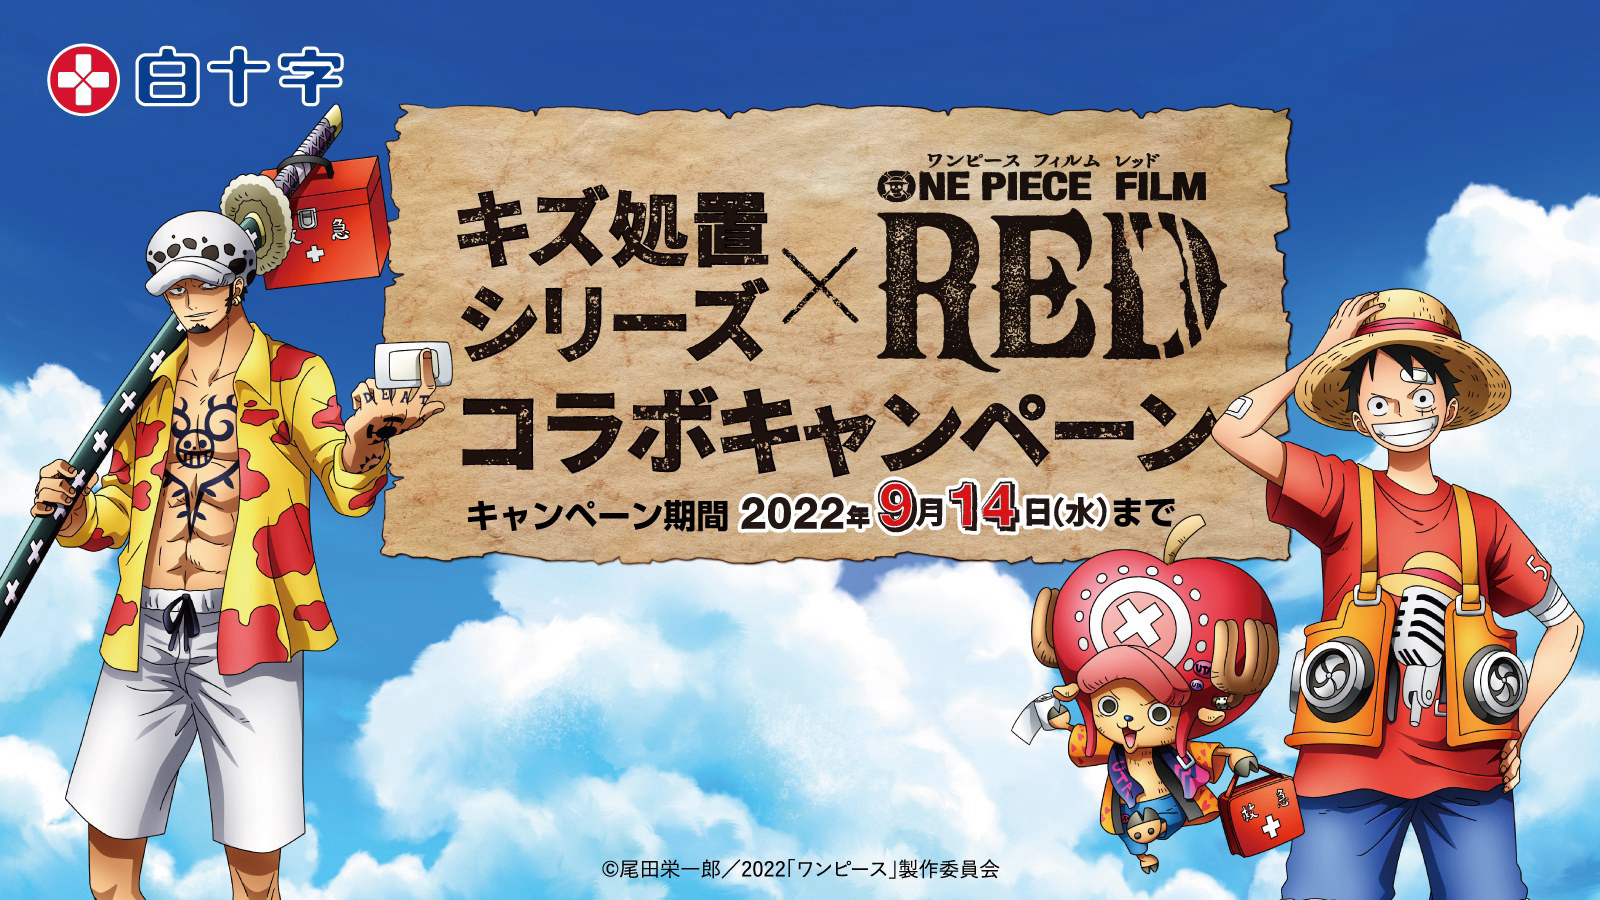 Vua Hải Tặc: Cuộc phiêu lưu đến đảo máy đồng hồ - One Piece Movie 2: Nejimaki-jima no Daibouken, One Piece: Nejimakijima no Bouken, One Piece: Nejimaki Shima no Bouken (2001)